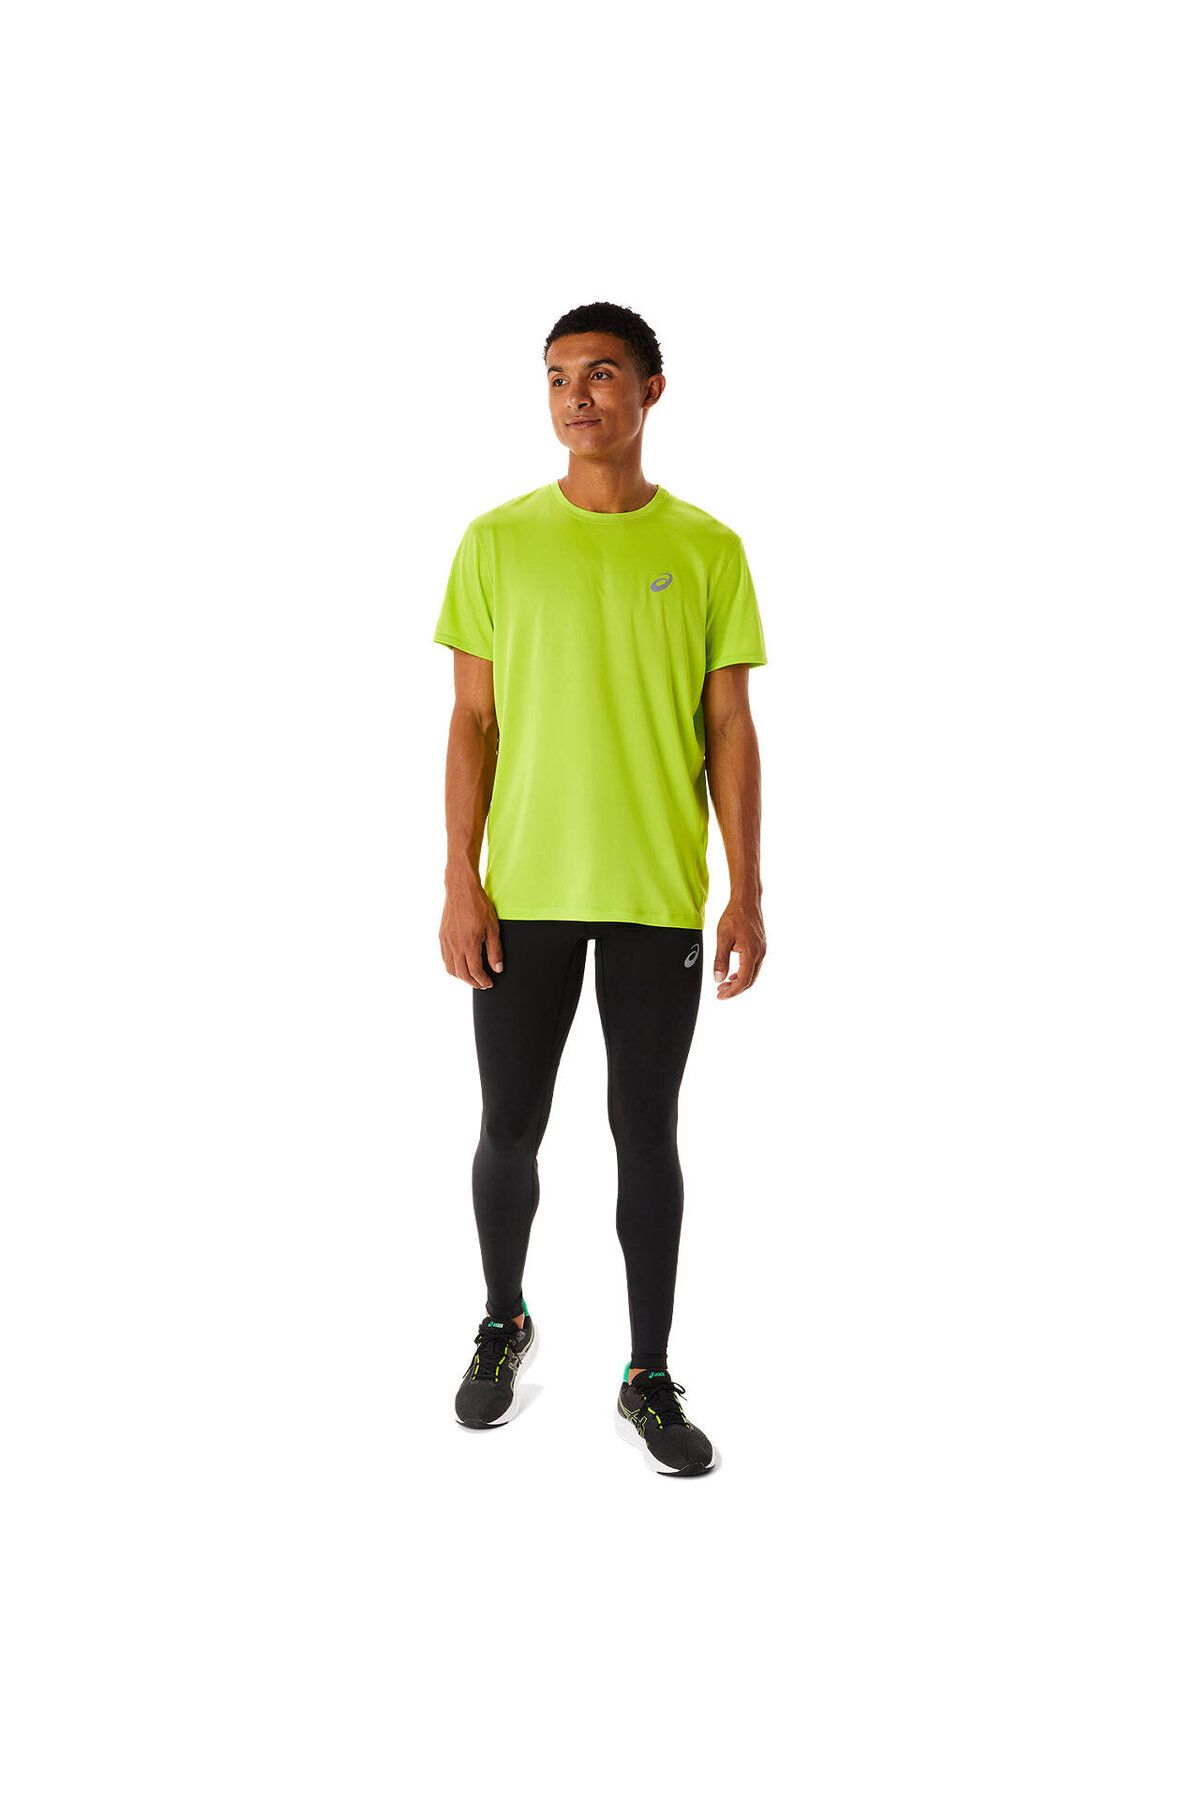 Asics Core Ss Top Erkek Yeşil Kısa Kollu Tshirt 2011c341-302